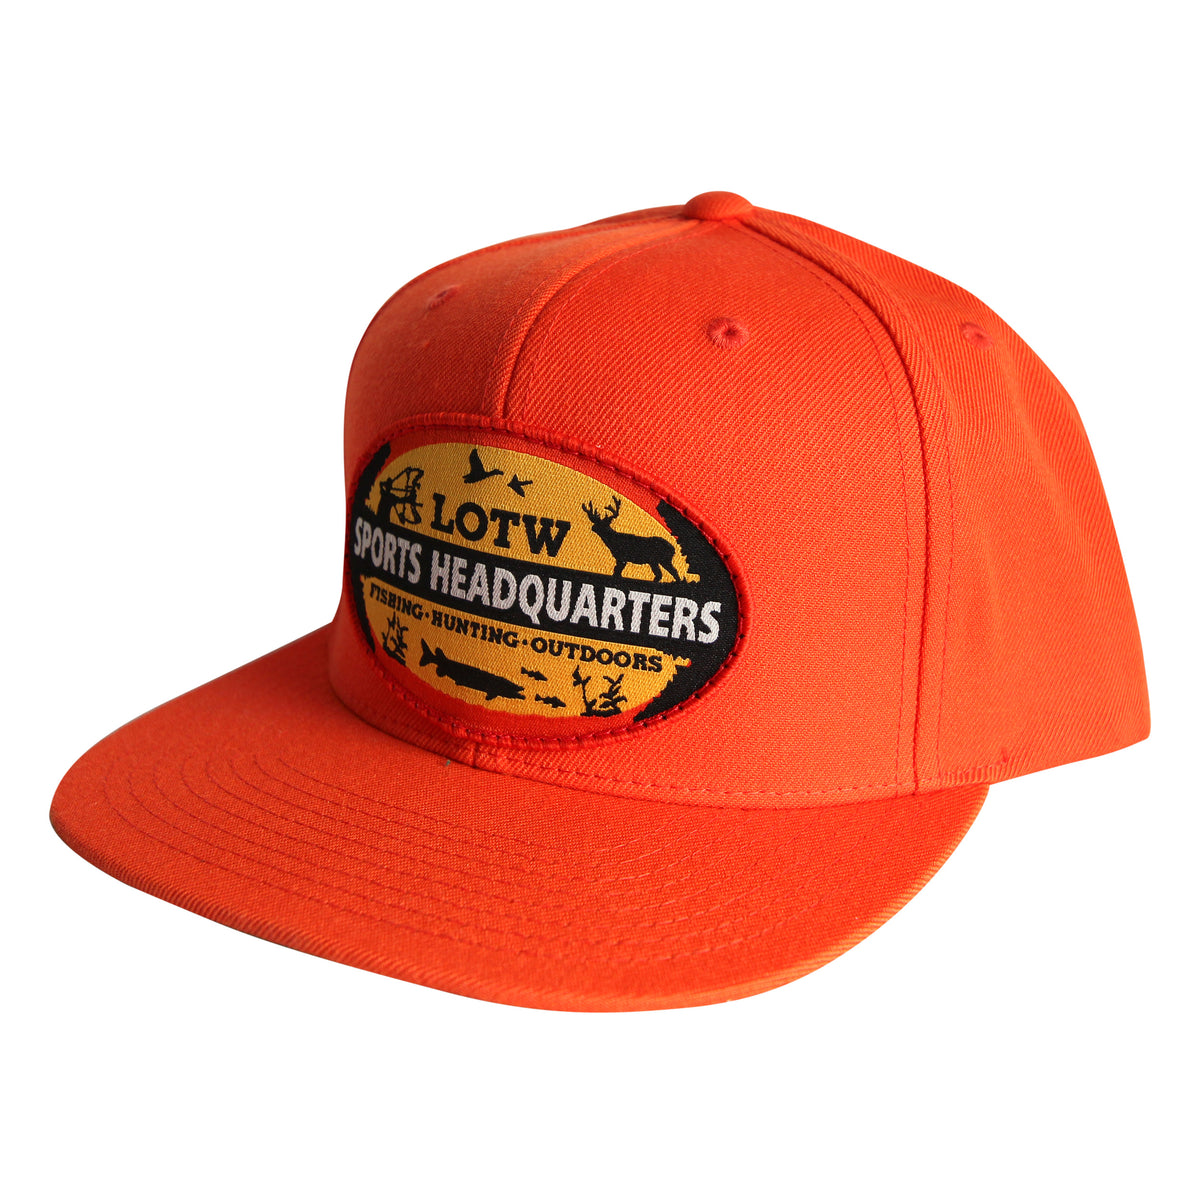 LOTW Sports Headquarters Classic Flat Visor Snapback Hats - Orange